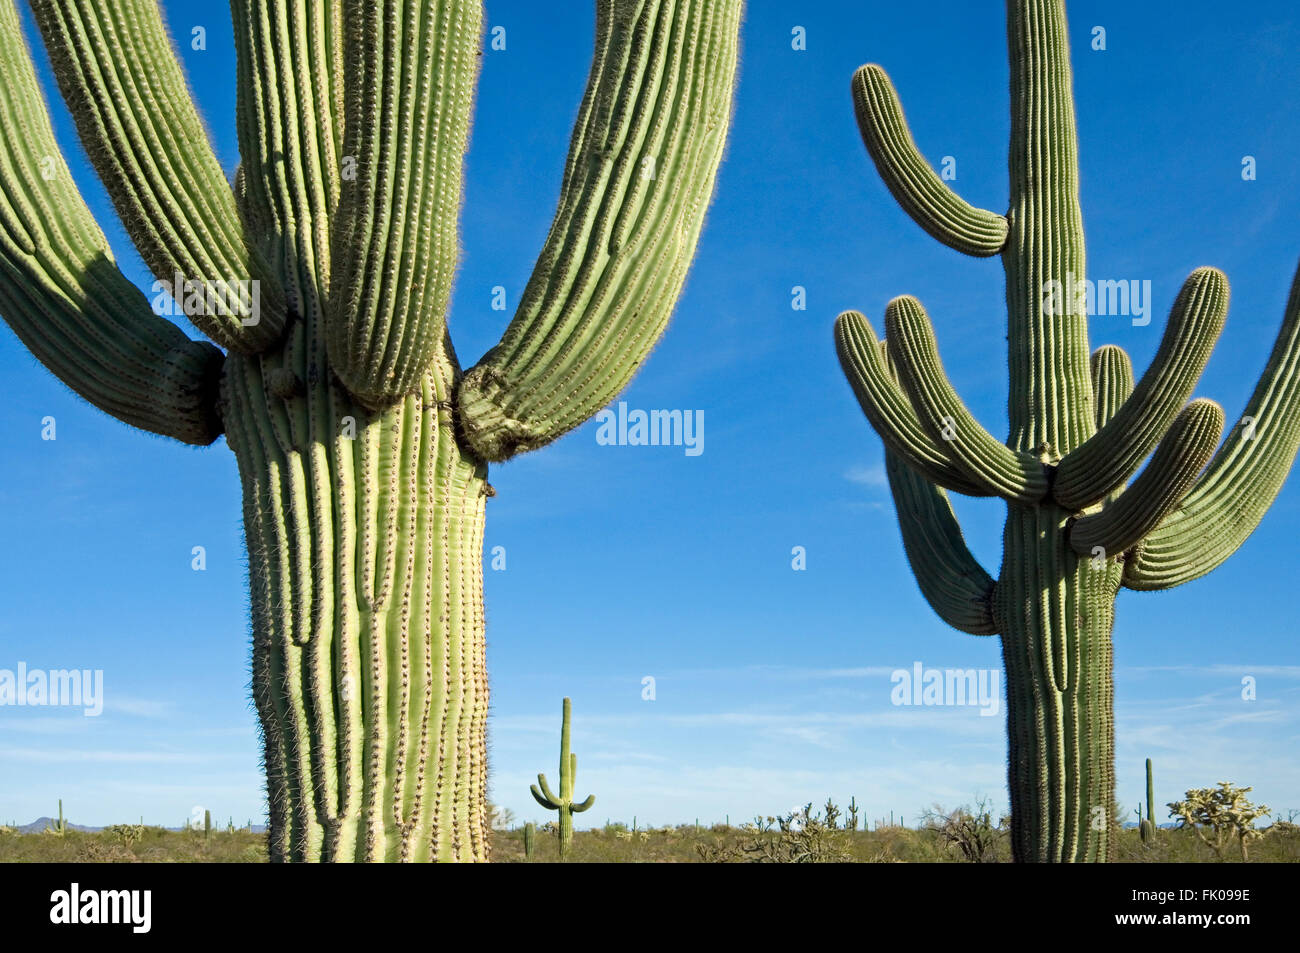 Saguaro cacti (Carnegiea gigantea / Cereus giganteus / Pilocereus giganteus) in the Sonoran desert, Arizona, USA Stock Photo